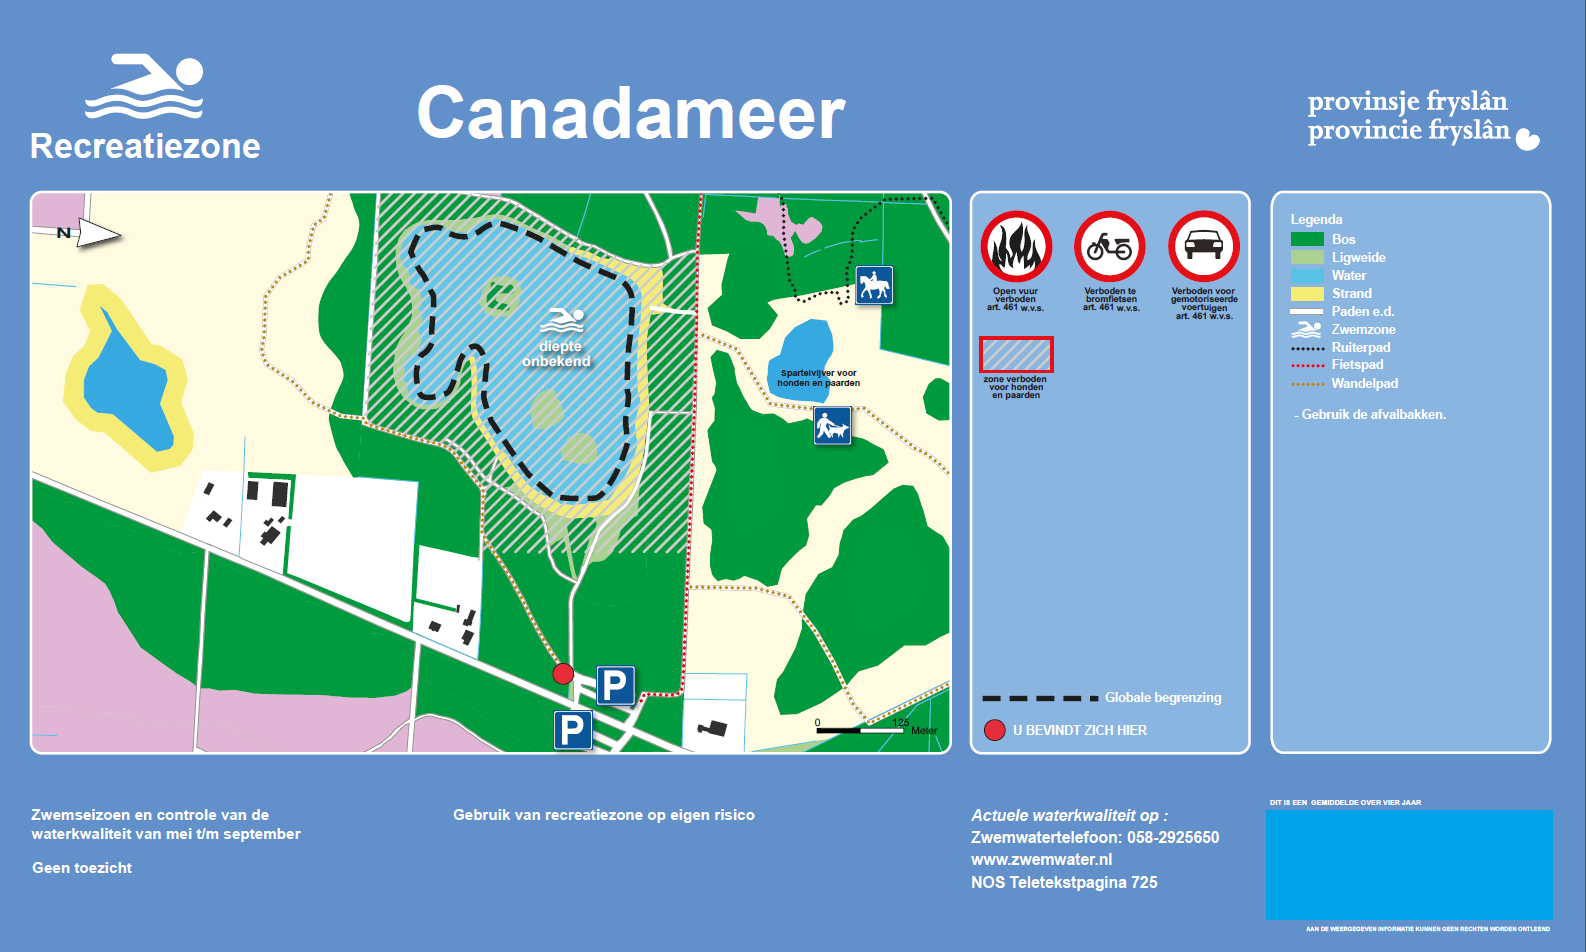 Het informatiebord bij zwemlocatie Canadameer